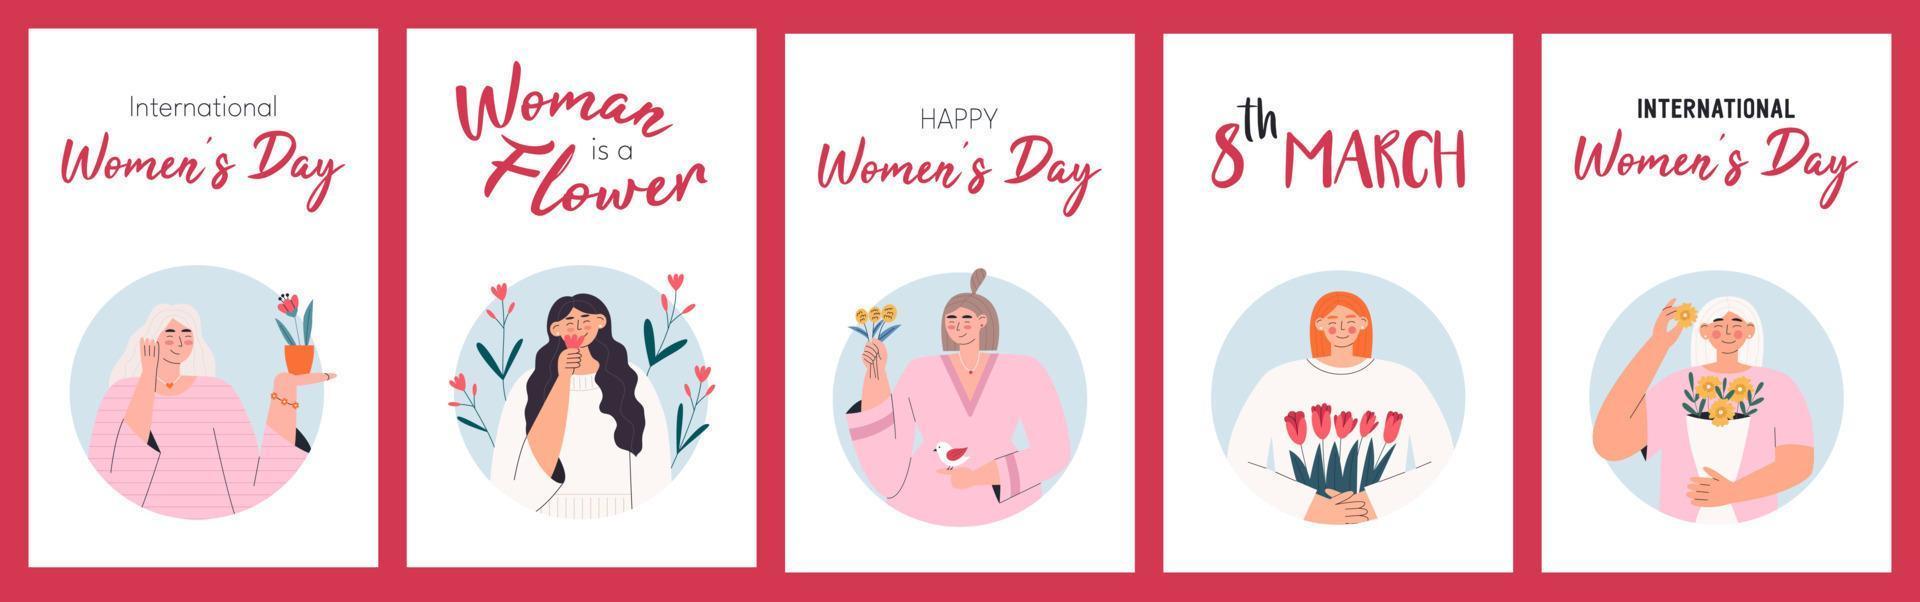 tarjetas de felicitaciones para el dia internacional de la mujer vector